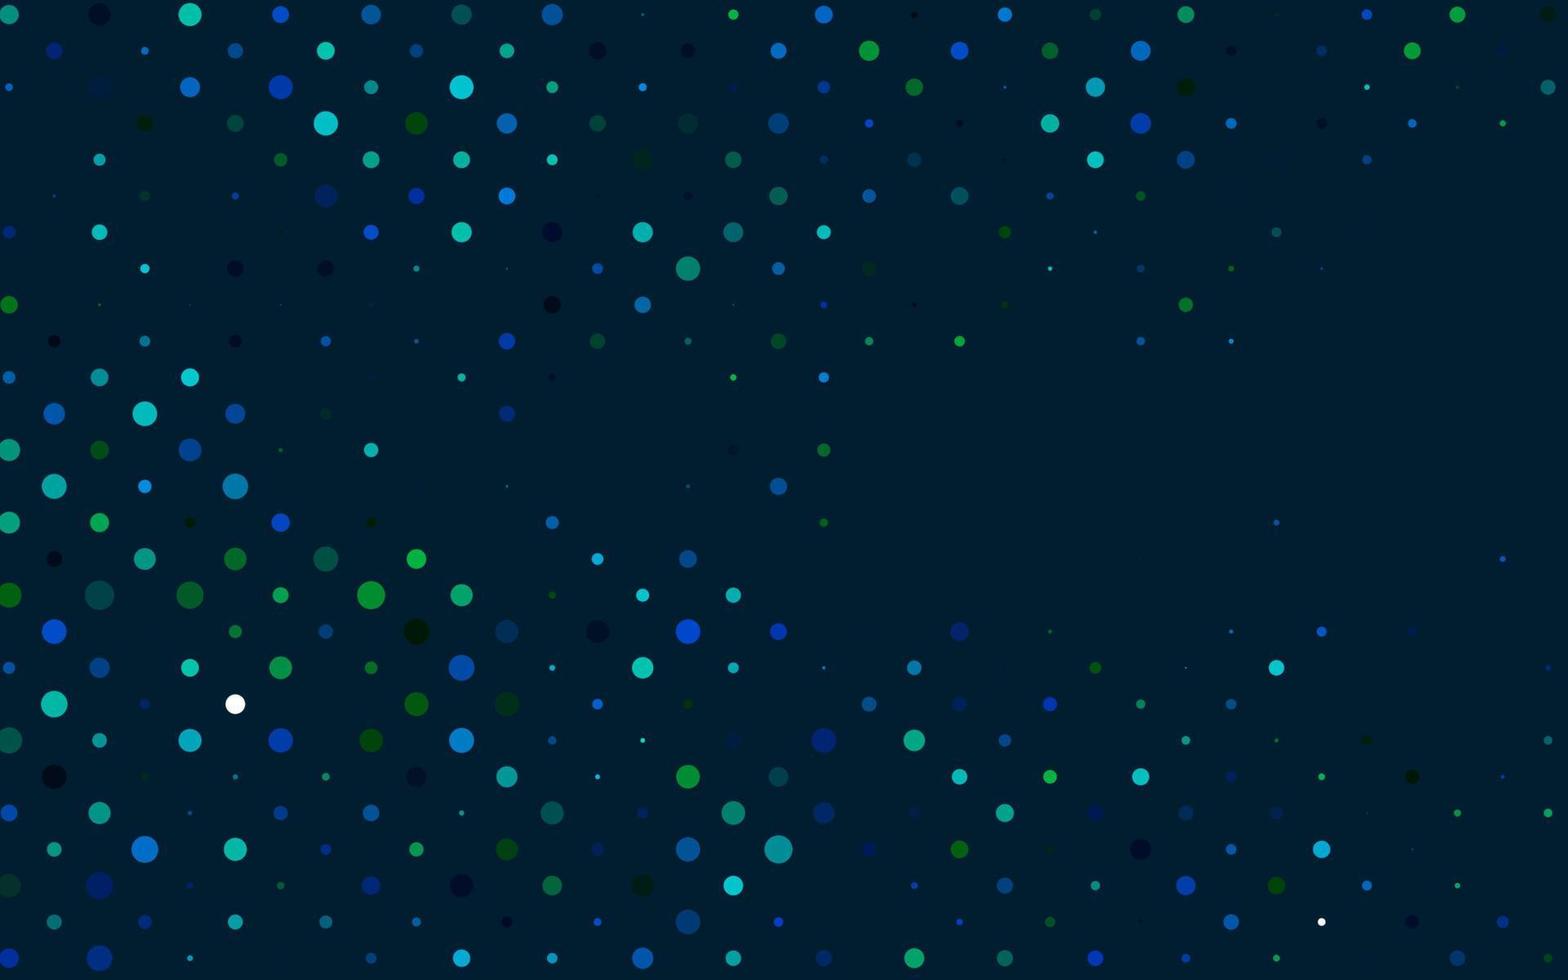 ljusblå, grön vektormall med cirklar. vektor